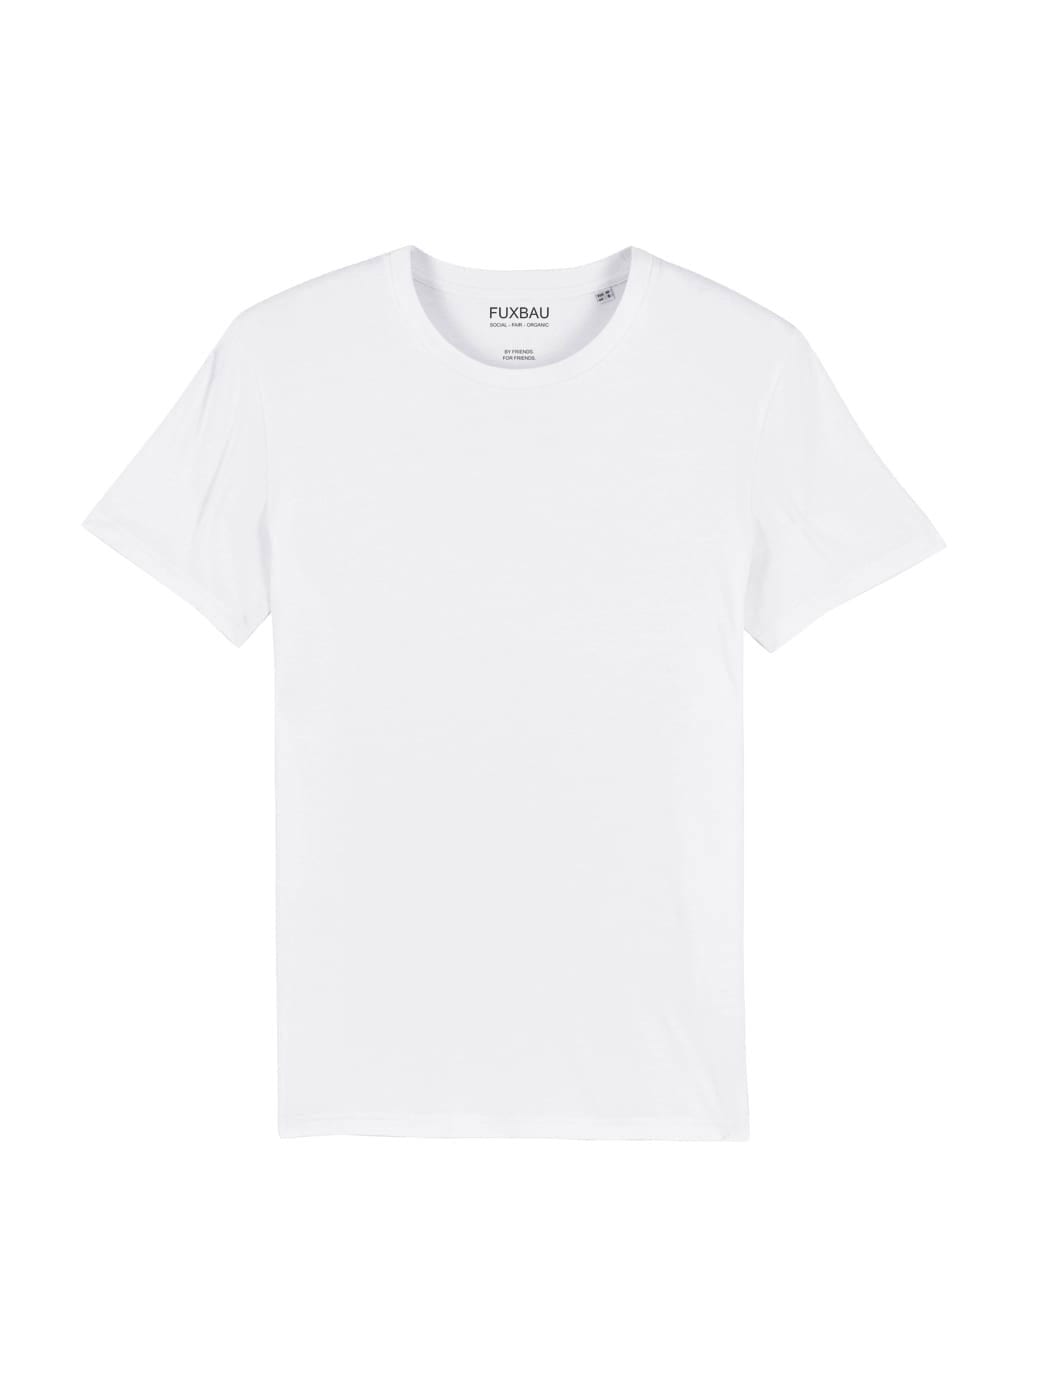 Faires und nachhaltiges schweres Basic T-Shirt von FUXBAU in weiß aus 100% Biobaumwolle